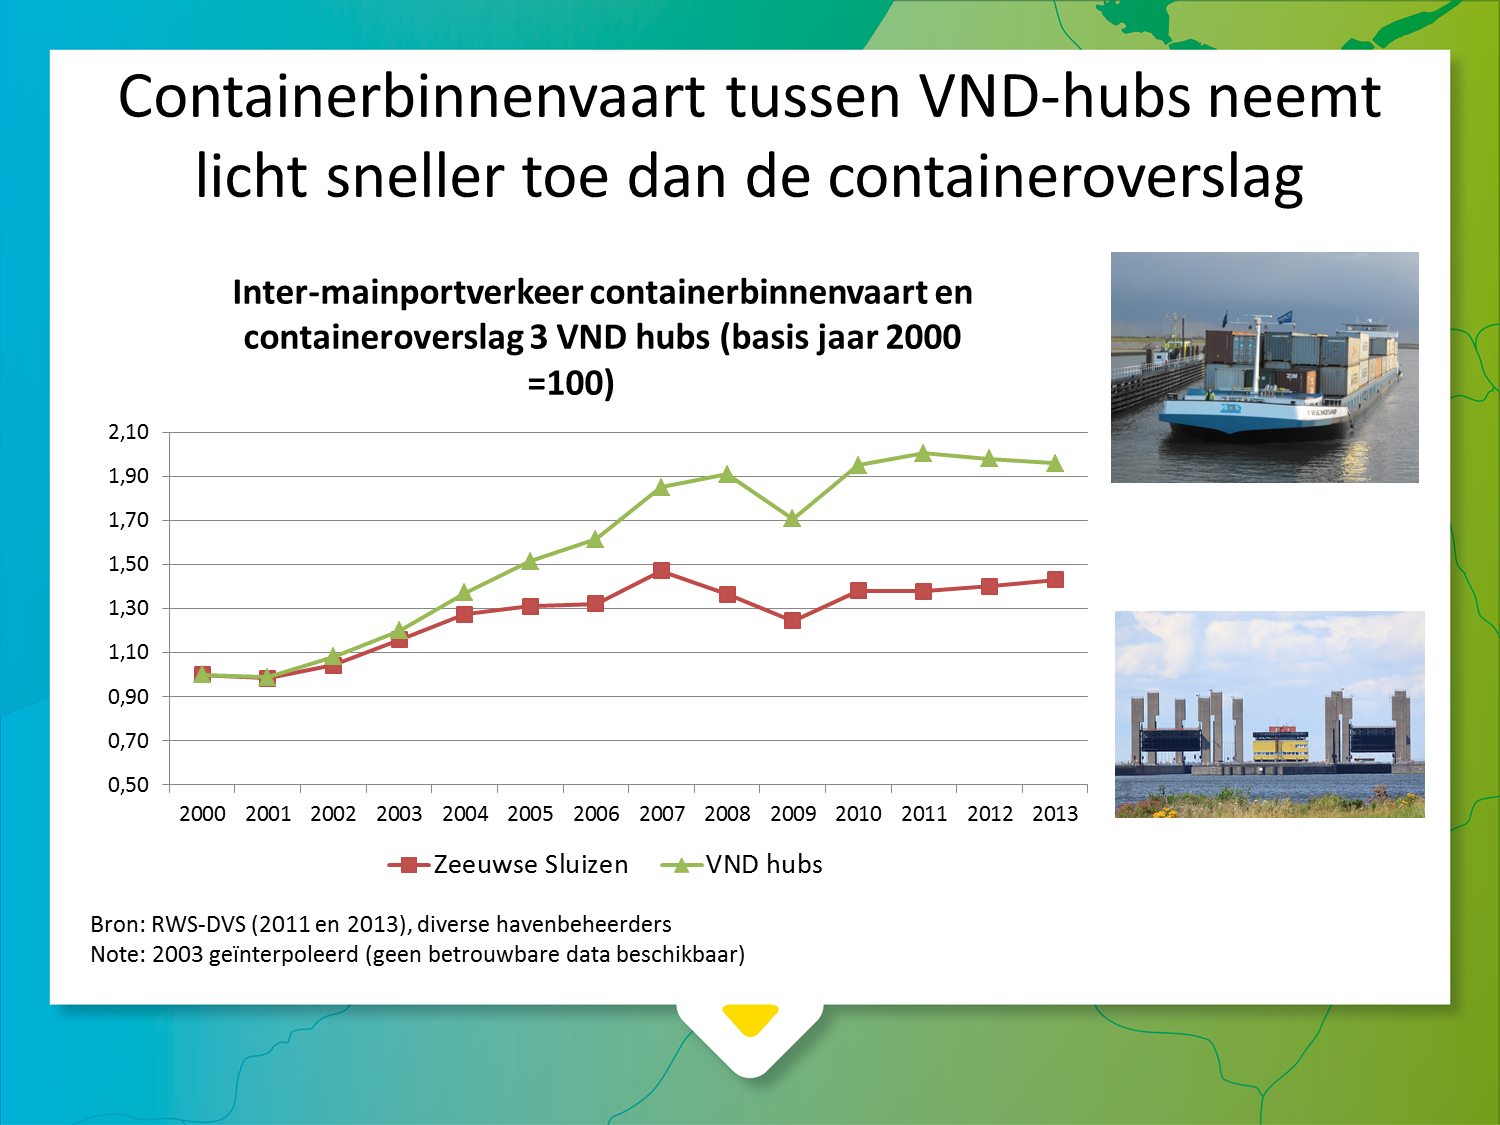 van containers met de binnenvaart tussen containerhubs Antwerpen en Rotterdam is daarom een relevante indicator.